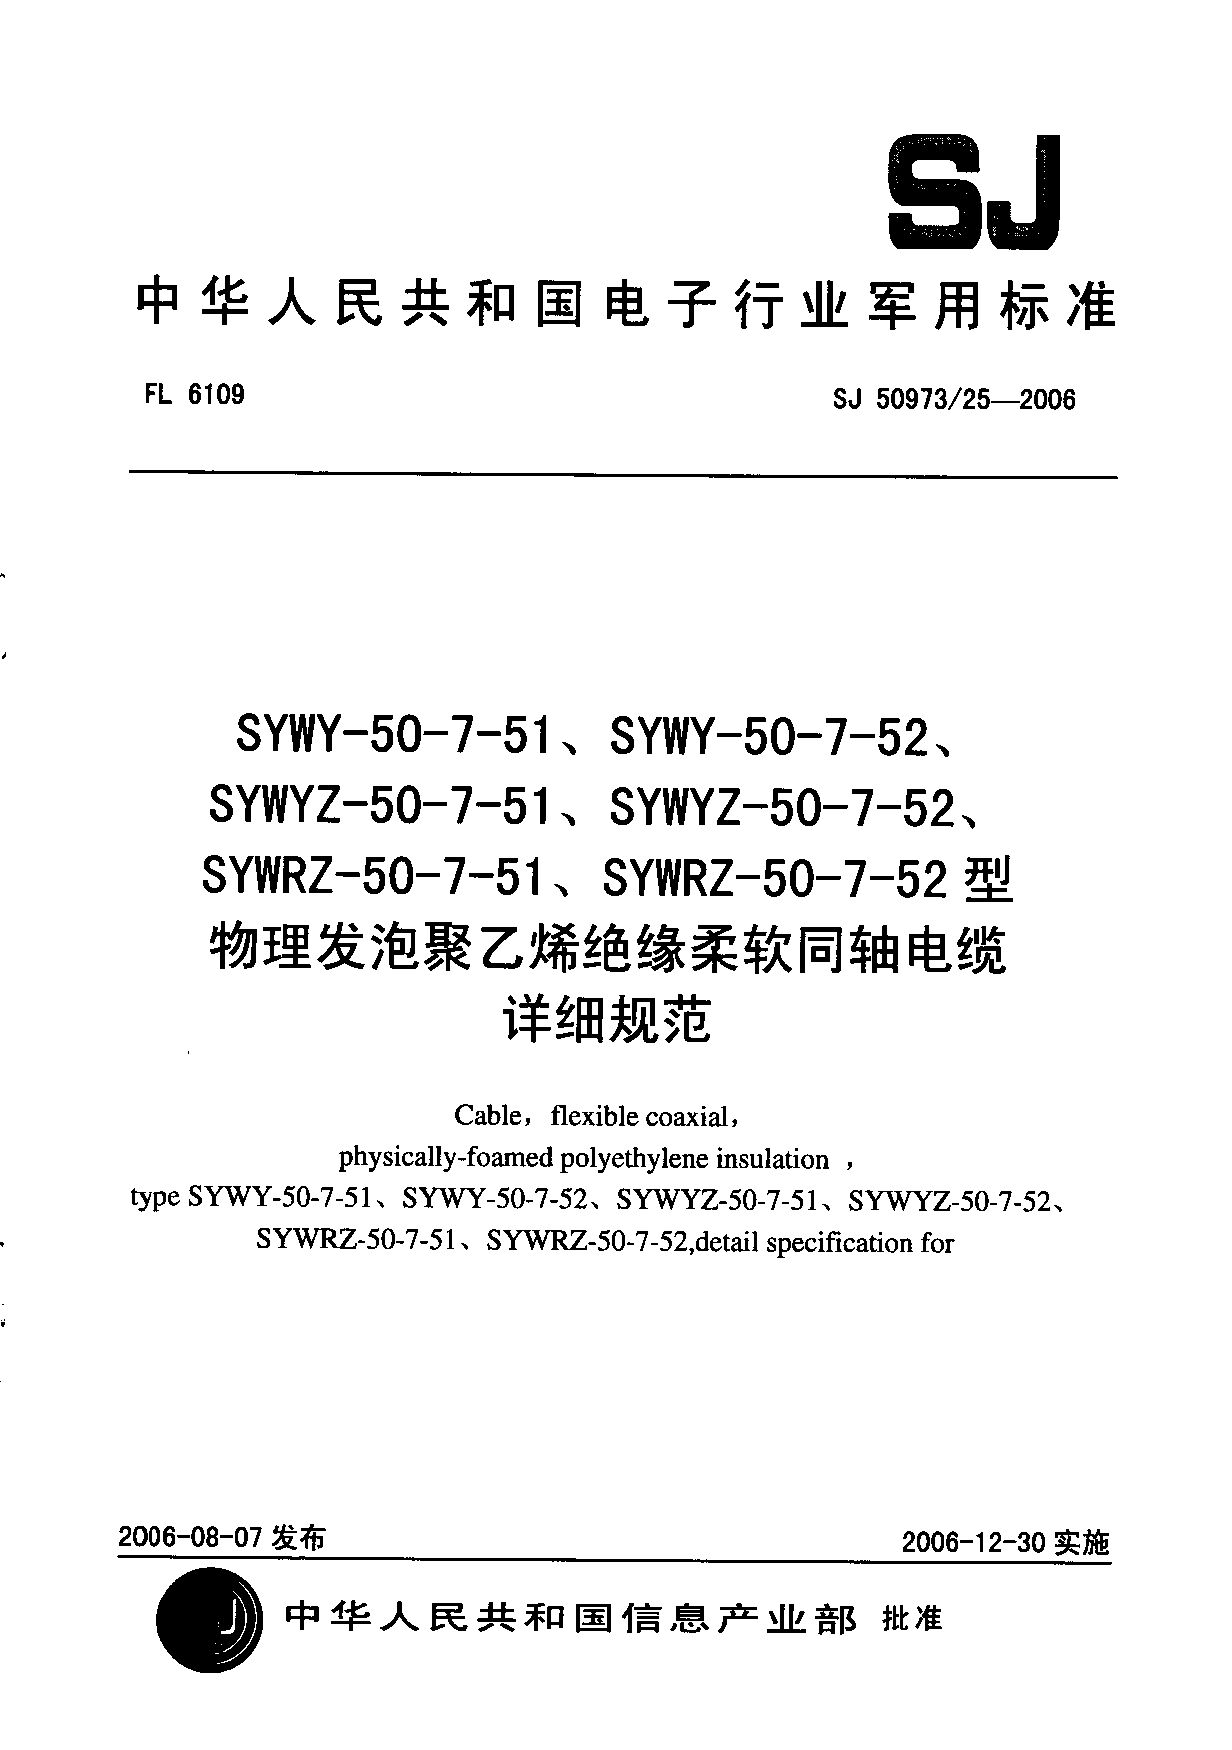 SJ 50973/25-2006